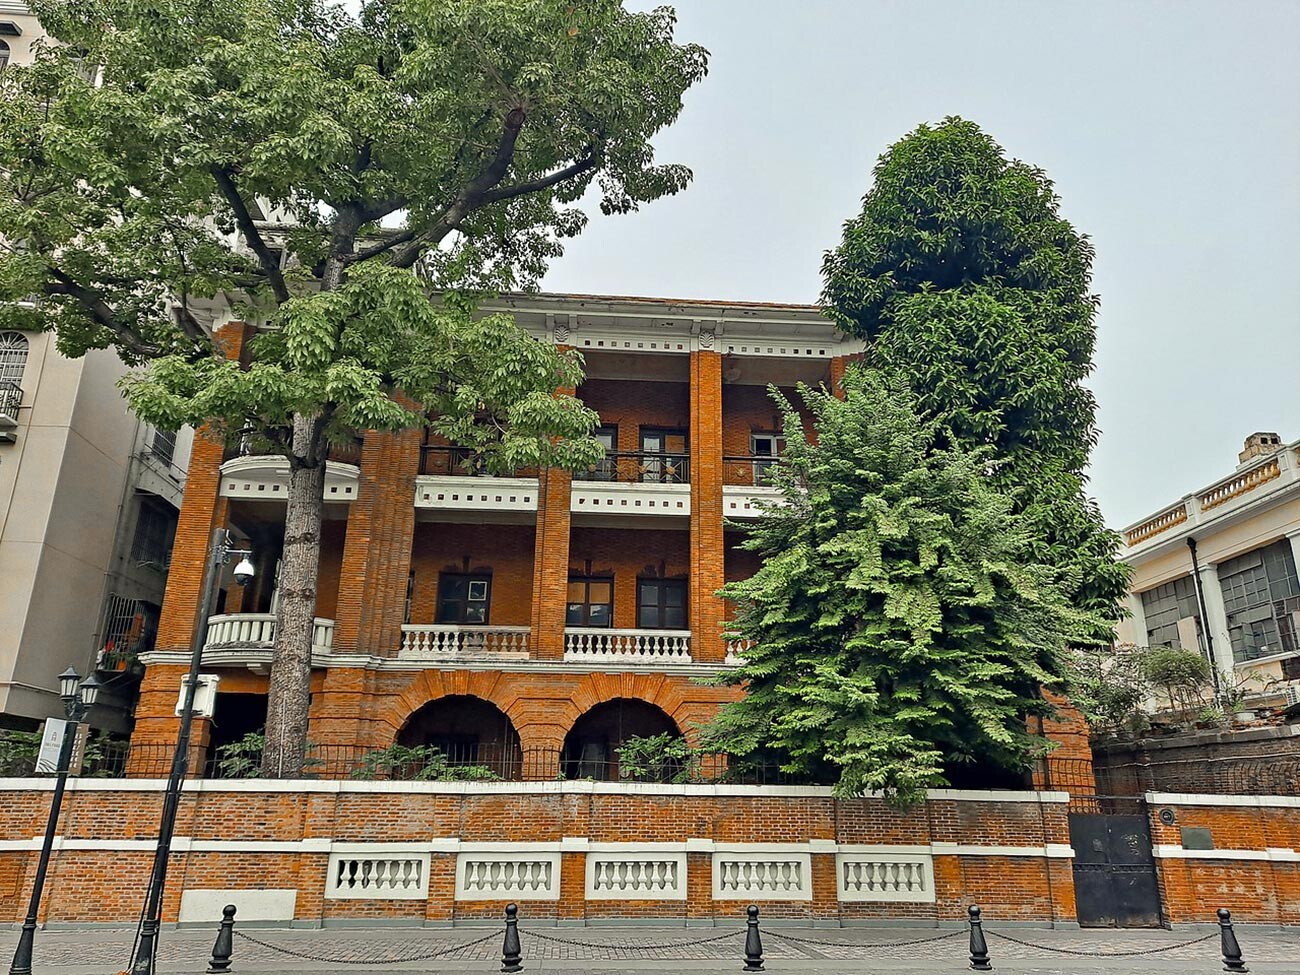 Siège du consulat général soviétique (et auparavant de l'Empire russe) à Guangzhou